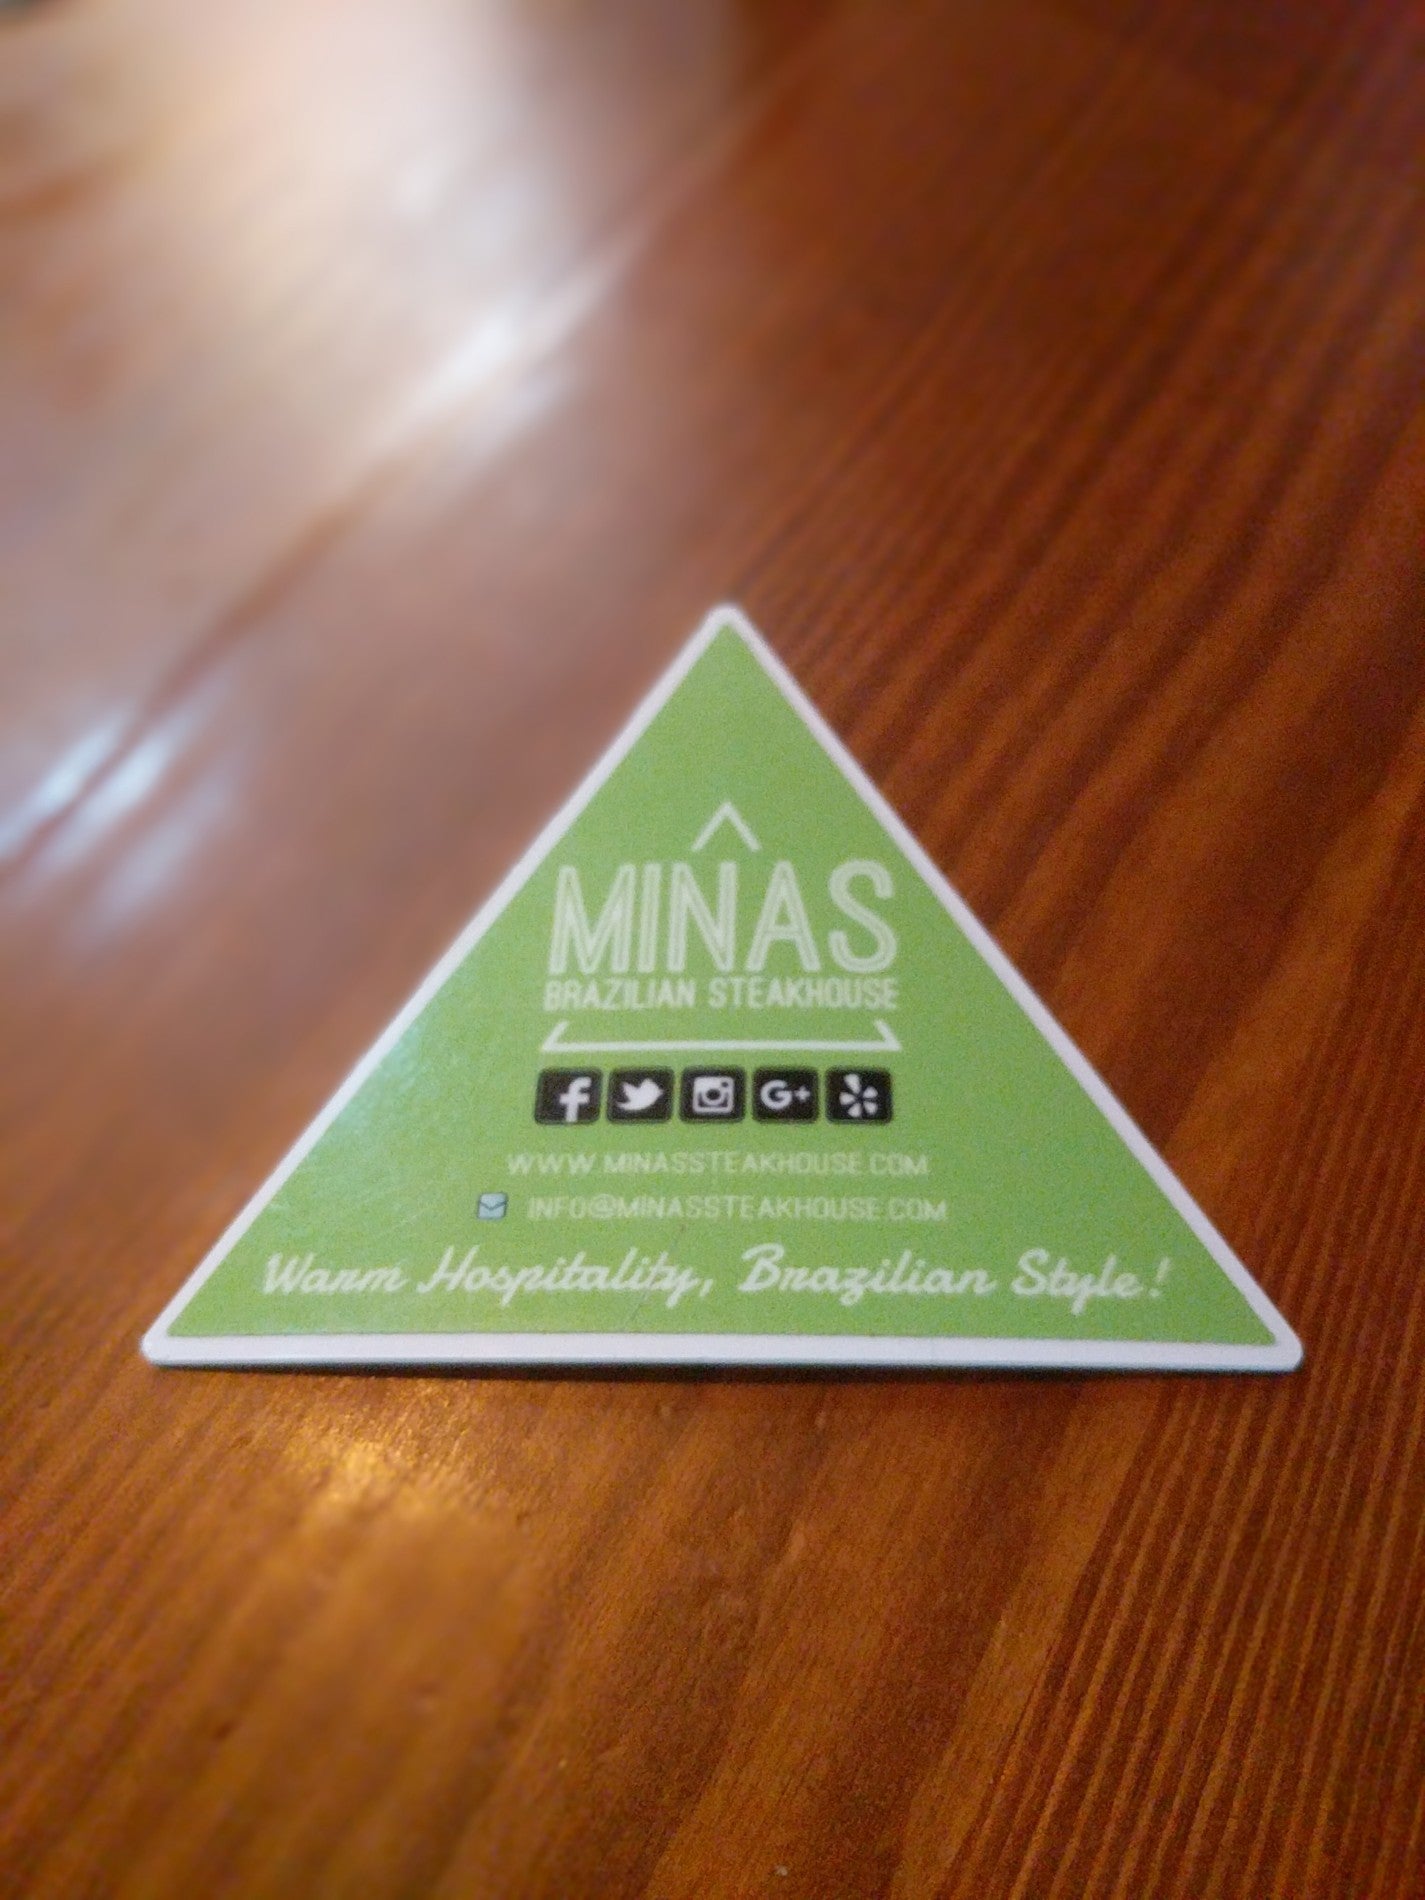 Minas Brazilian Steakhouse